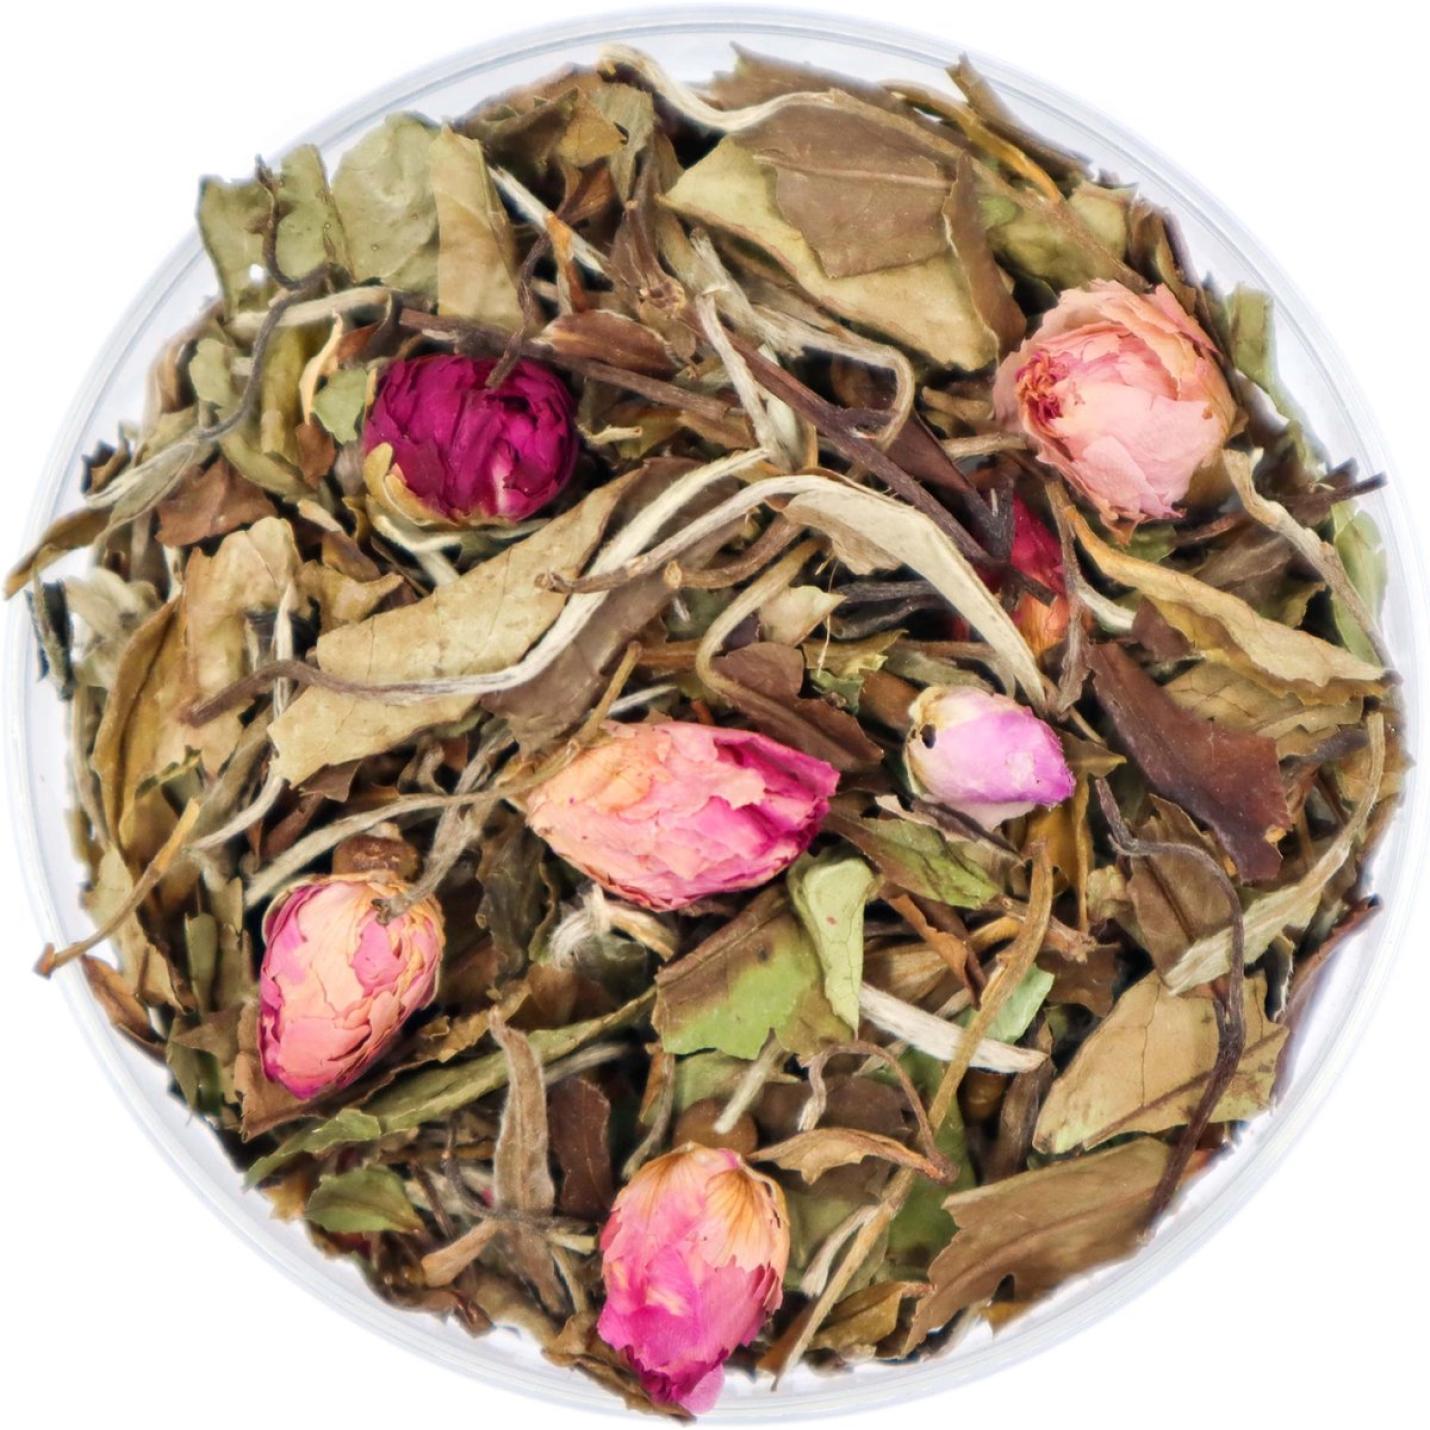 Rose Garden - Losse Thee - Deze thee is zacht en fris met de smaak van rozenblaadjes - 45 gram Amberpot 1